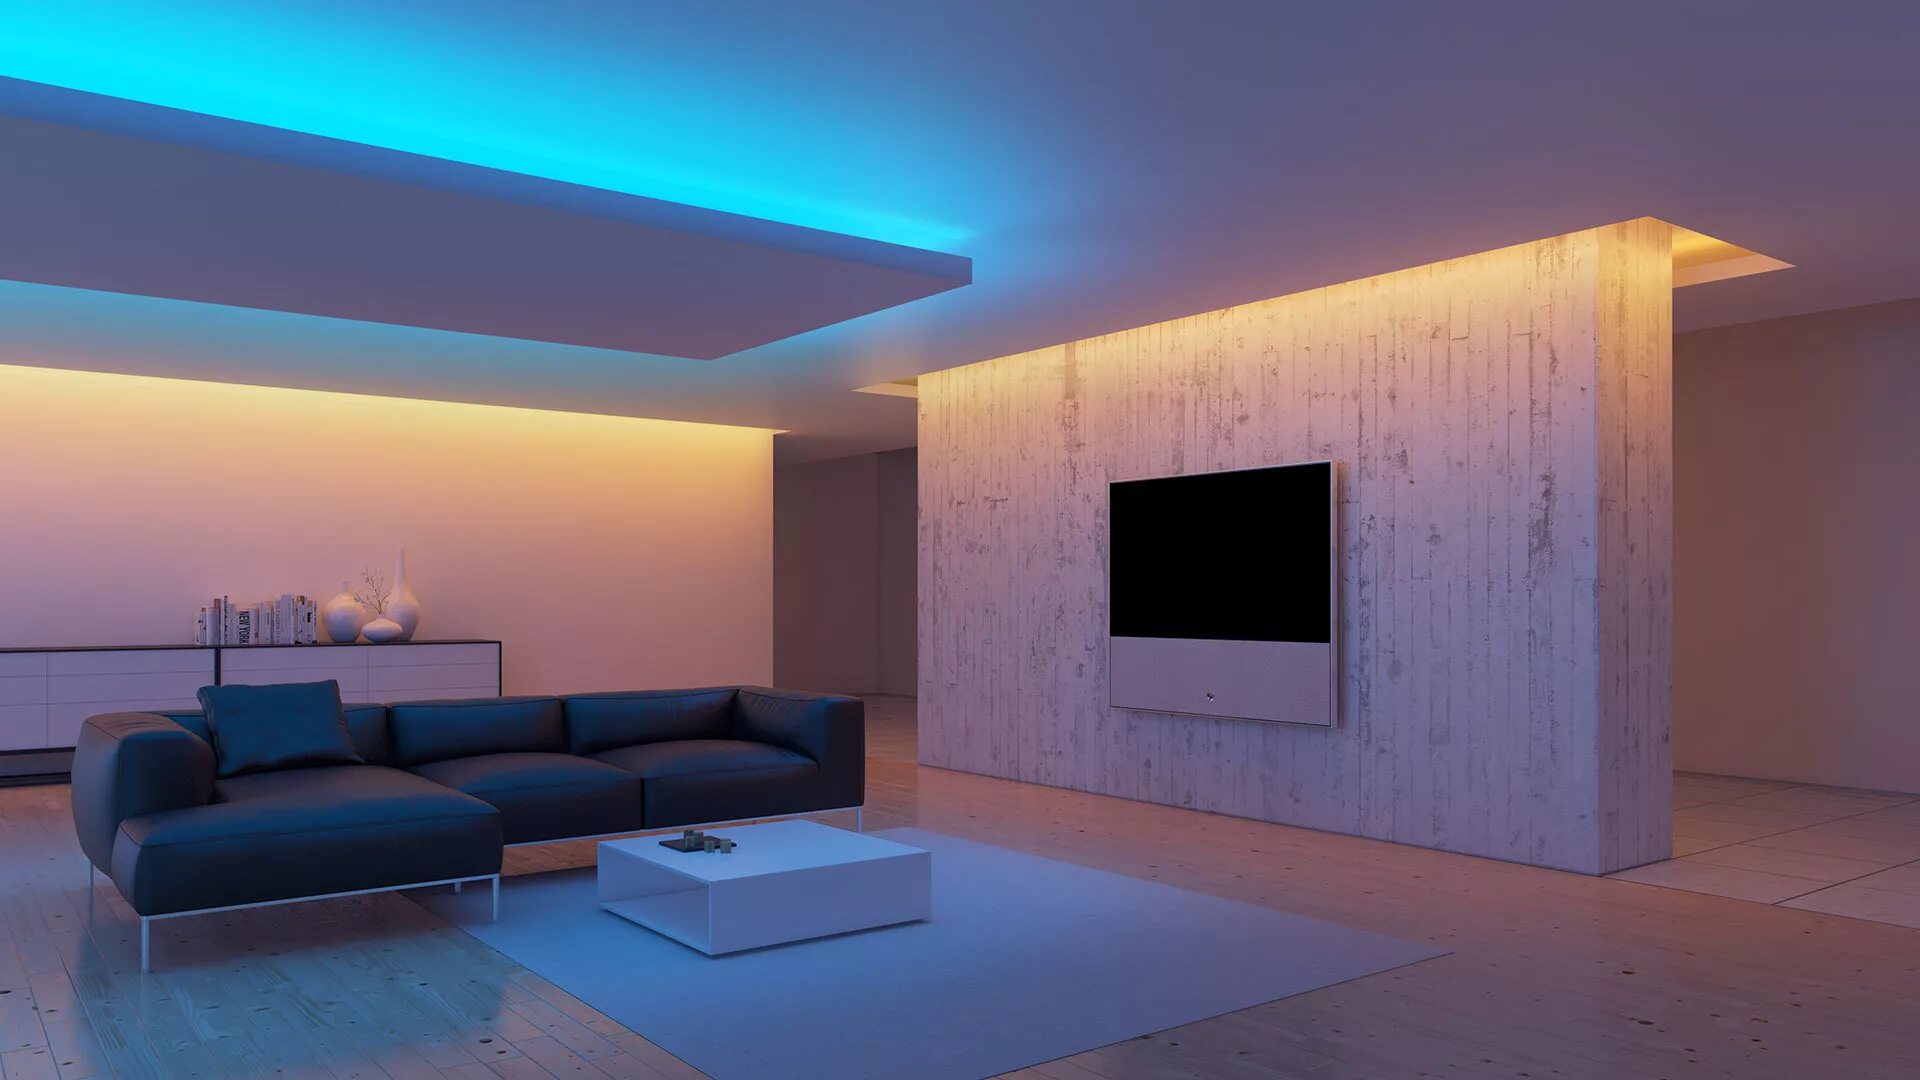 Проектирование света теплый свет. Потолок с подсветкой. Светодиодная подсветка потолка. Светодиодная лента в интерьере. Натяжные потолки с подсветкой.